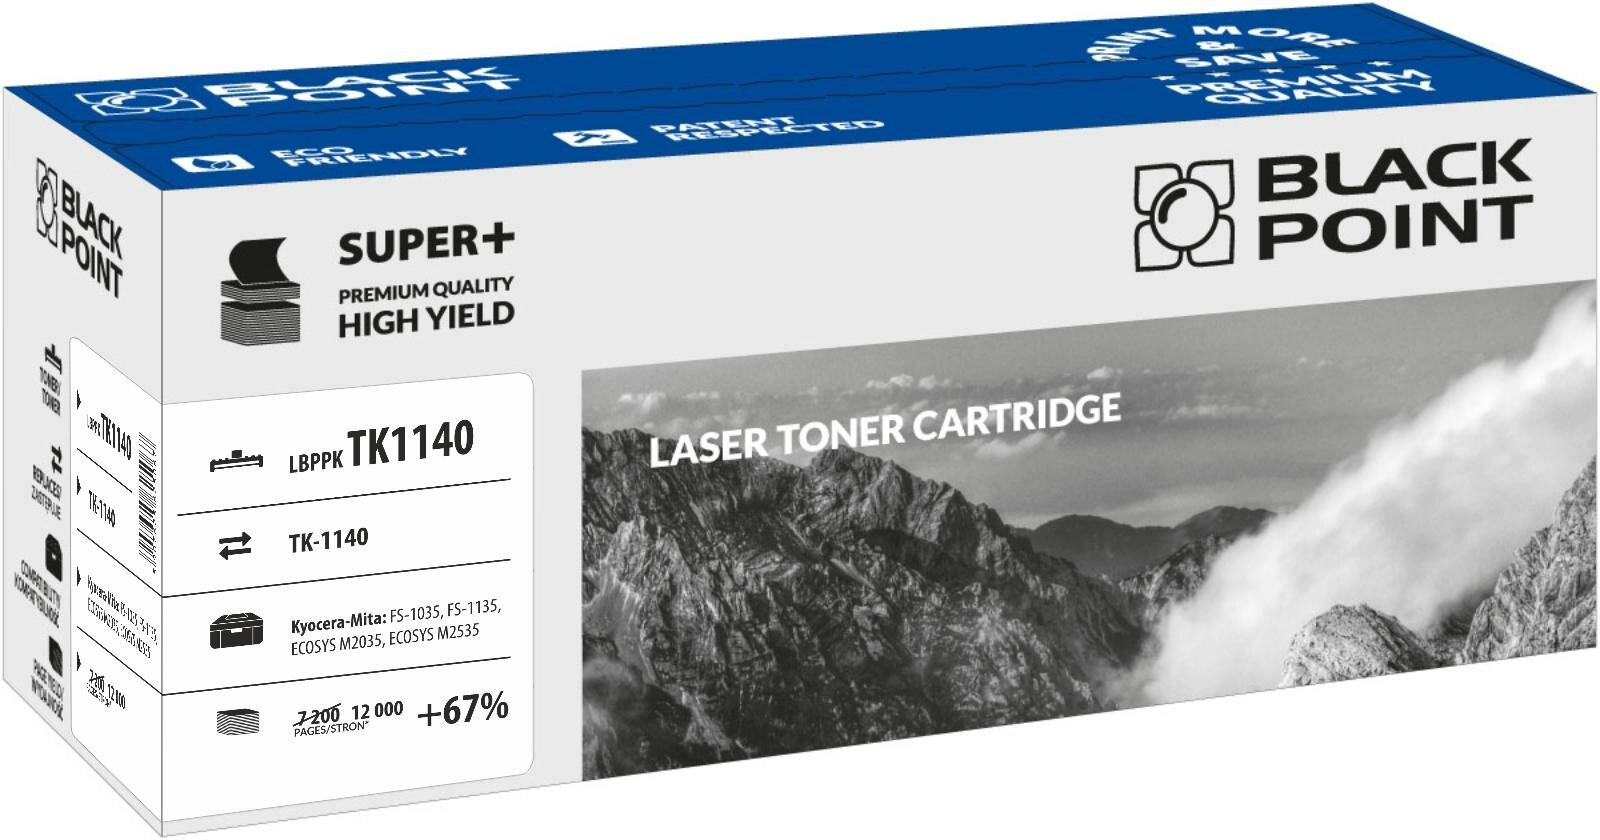 Toner laserowy Black Point Super Plus LBPPKTK1140 widok pod kątem na opakowanie